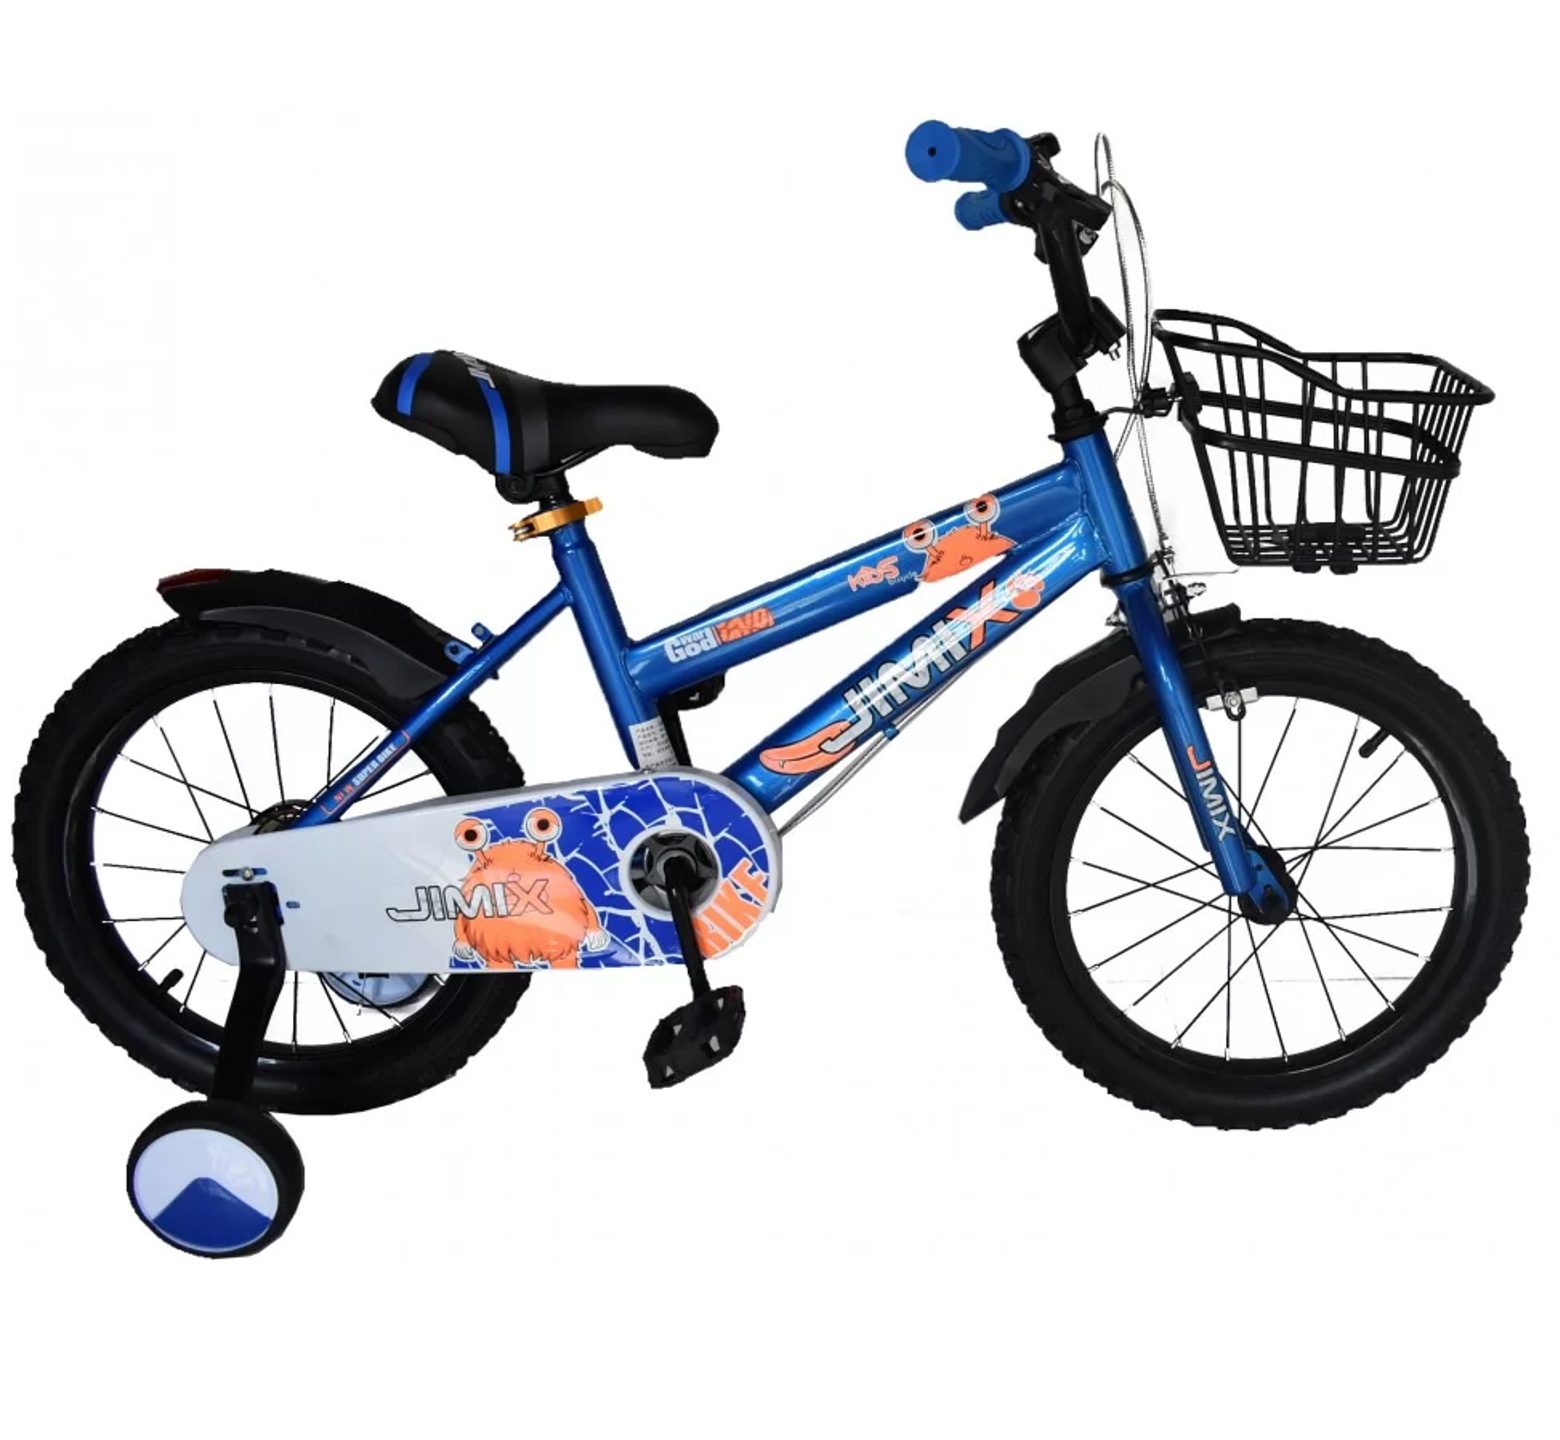 Παιδικό Ποδήλατο Jimix God War από 14 έως 20 ίντσες με καλάθι σε μπλε χρώμα